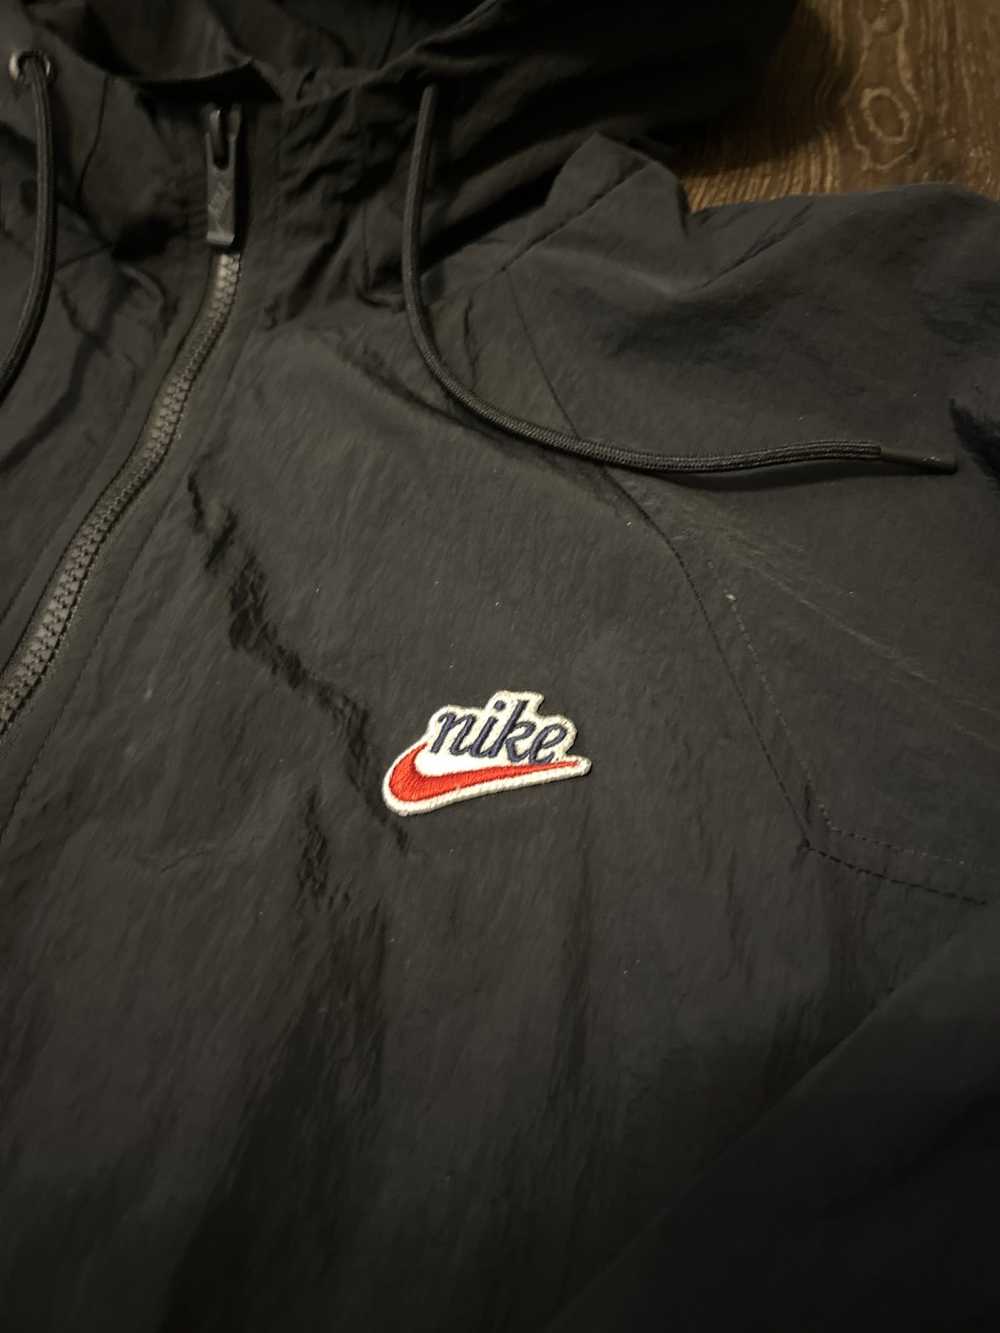 Jordan Brand × Nike Nike Zip Up Jacket - image 3